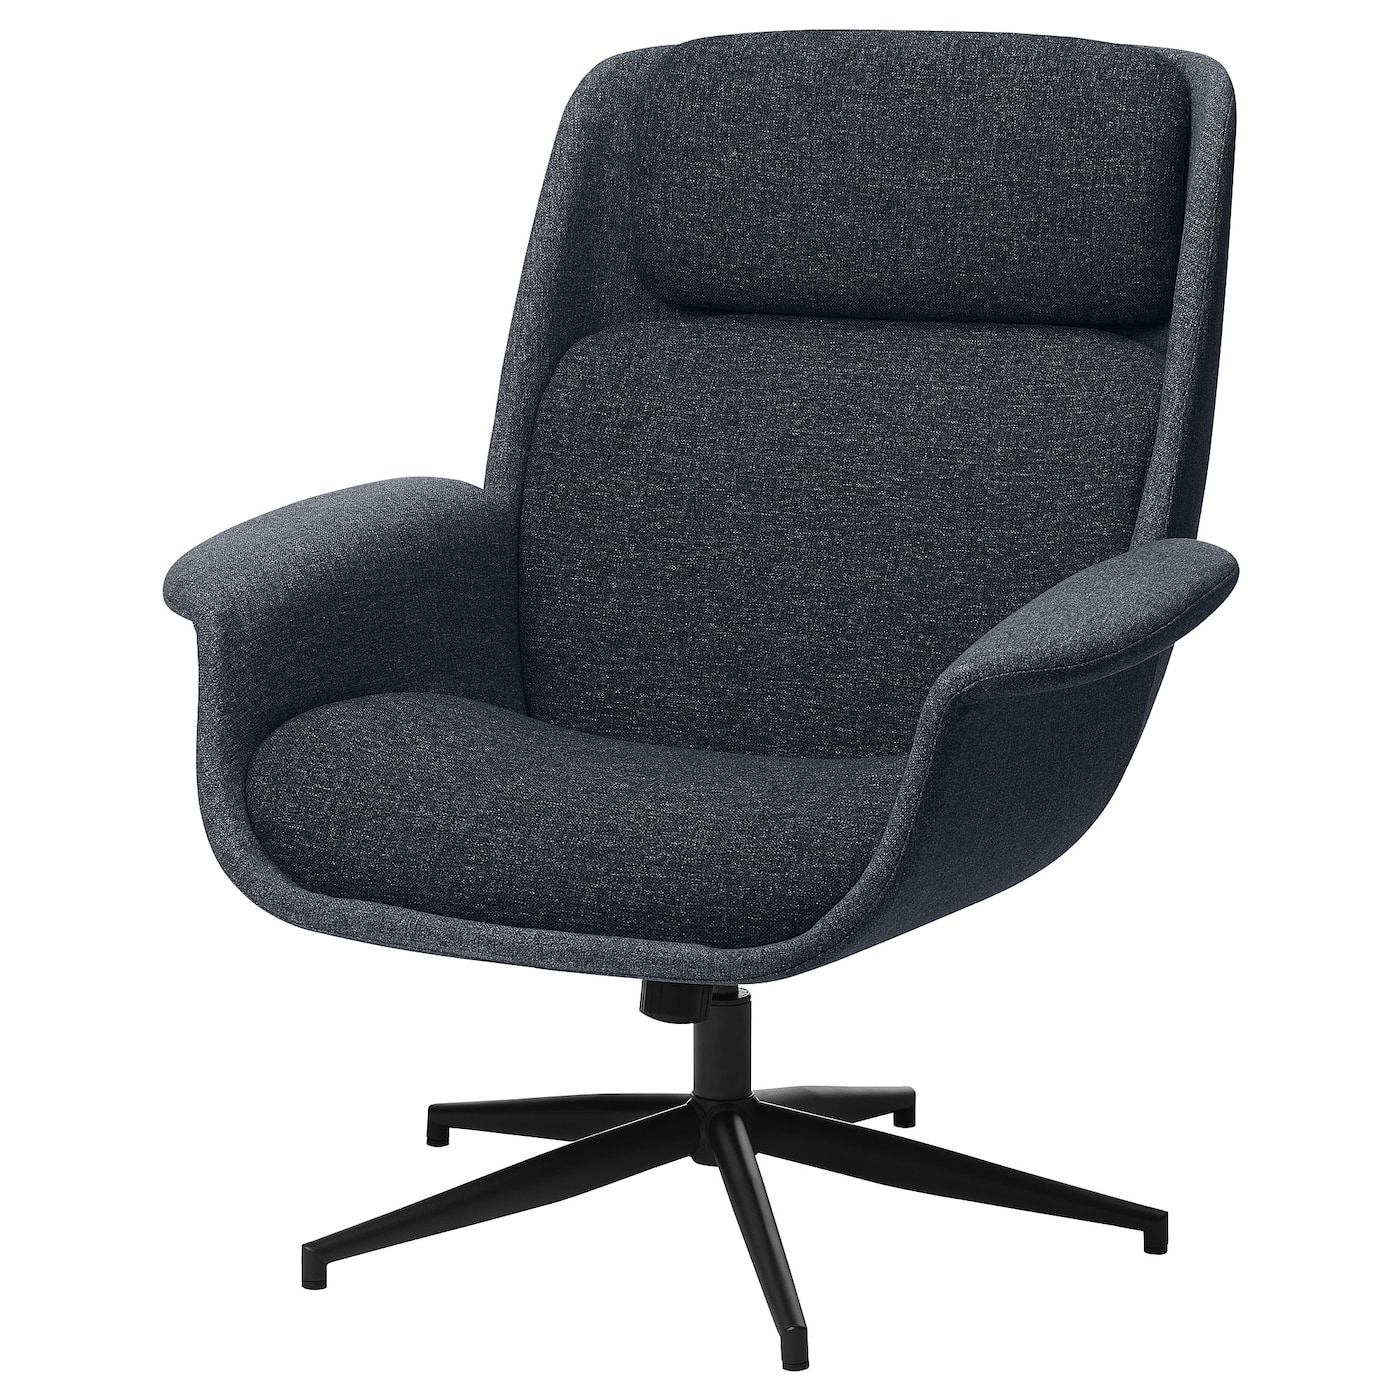 Вращающееся кресло - IKEA ÄLEBY/ALEBY, 88x86x100см, серый, АЛЕБИ ИКЕА